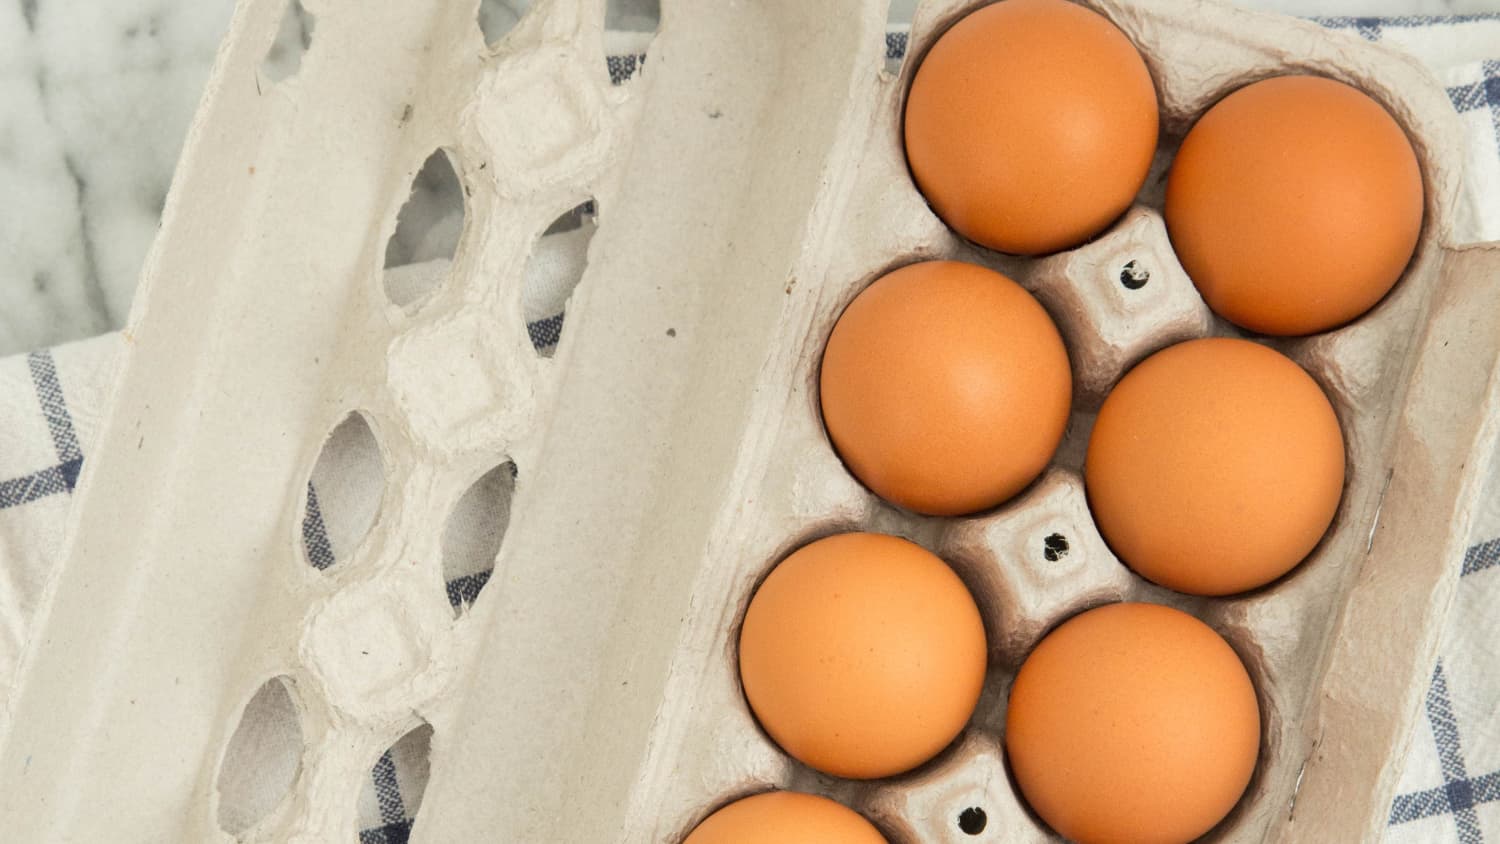 Egg Holder Refrigerator Egg Dispenser Egg Storage Box Egg Fresh-Keeping  Case USA